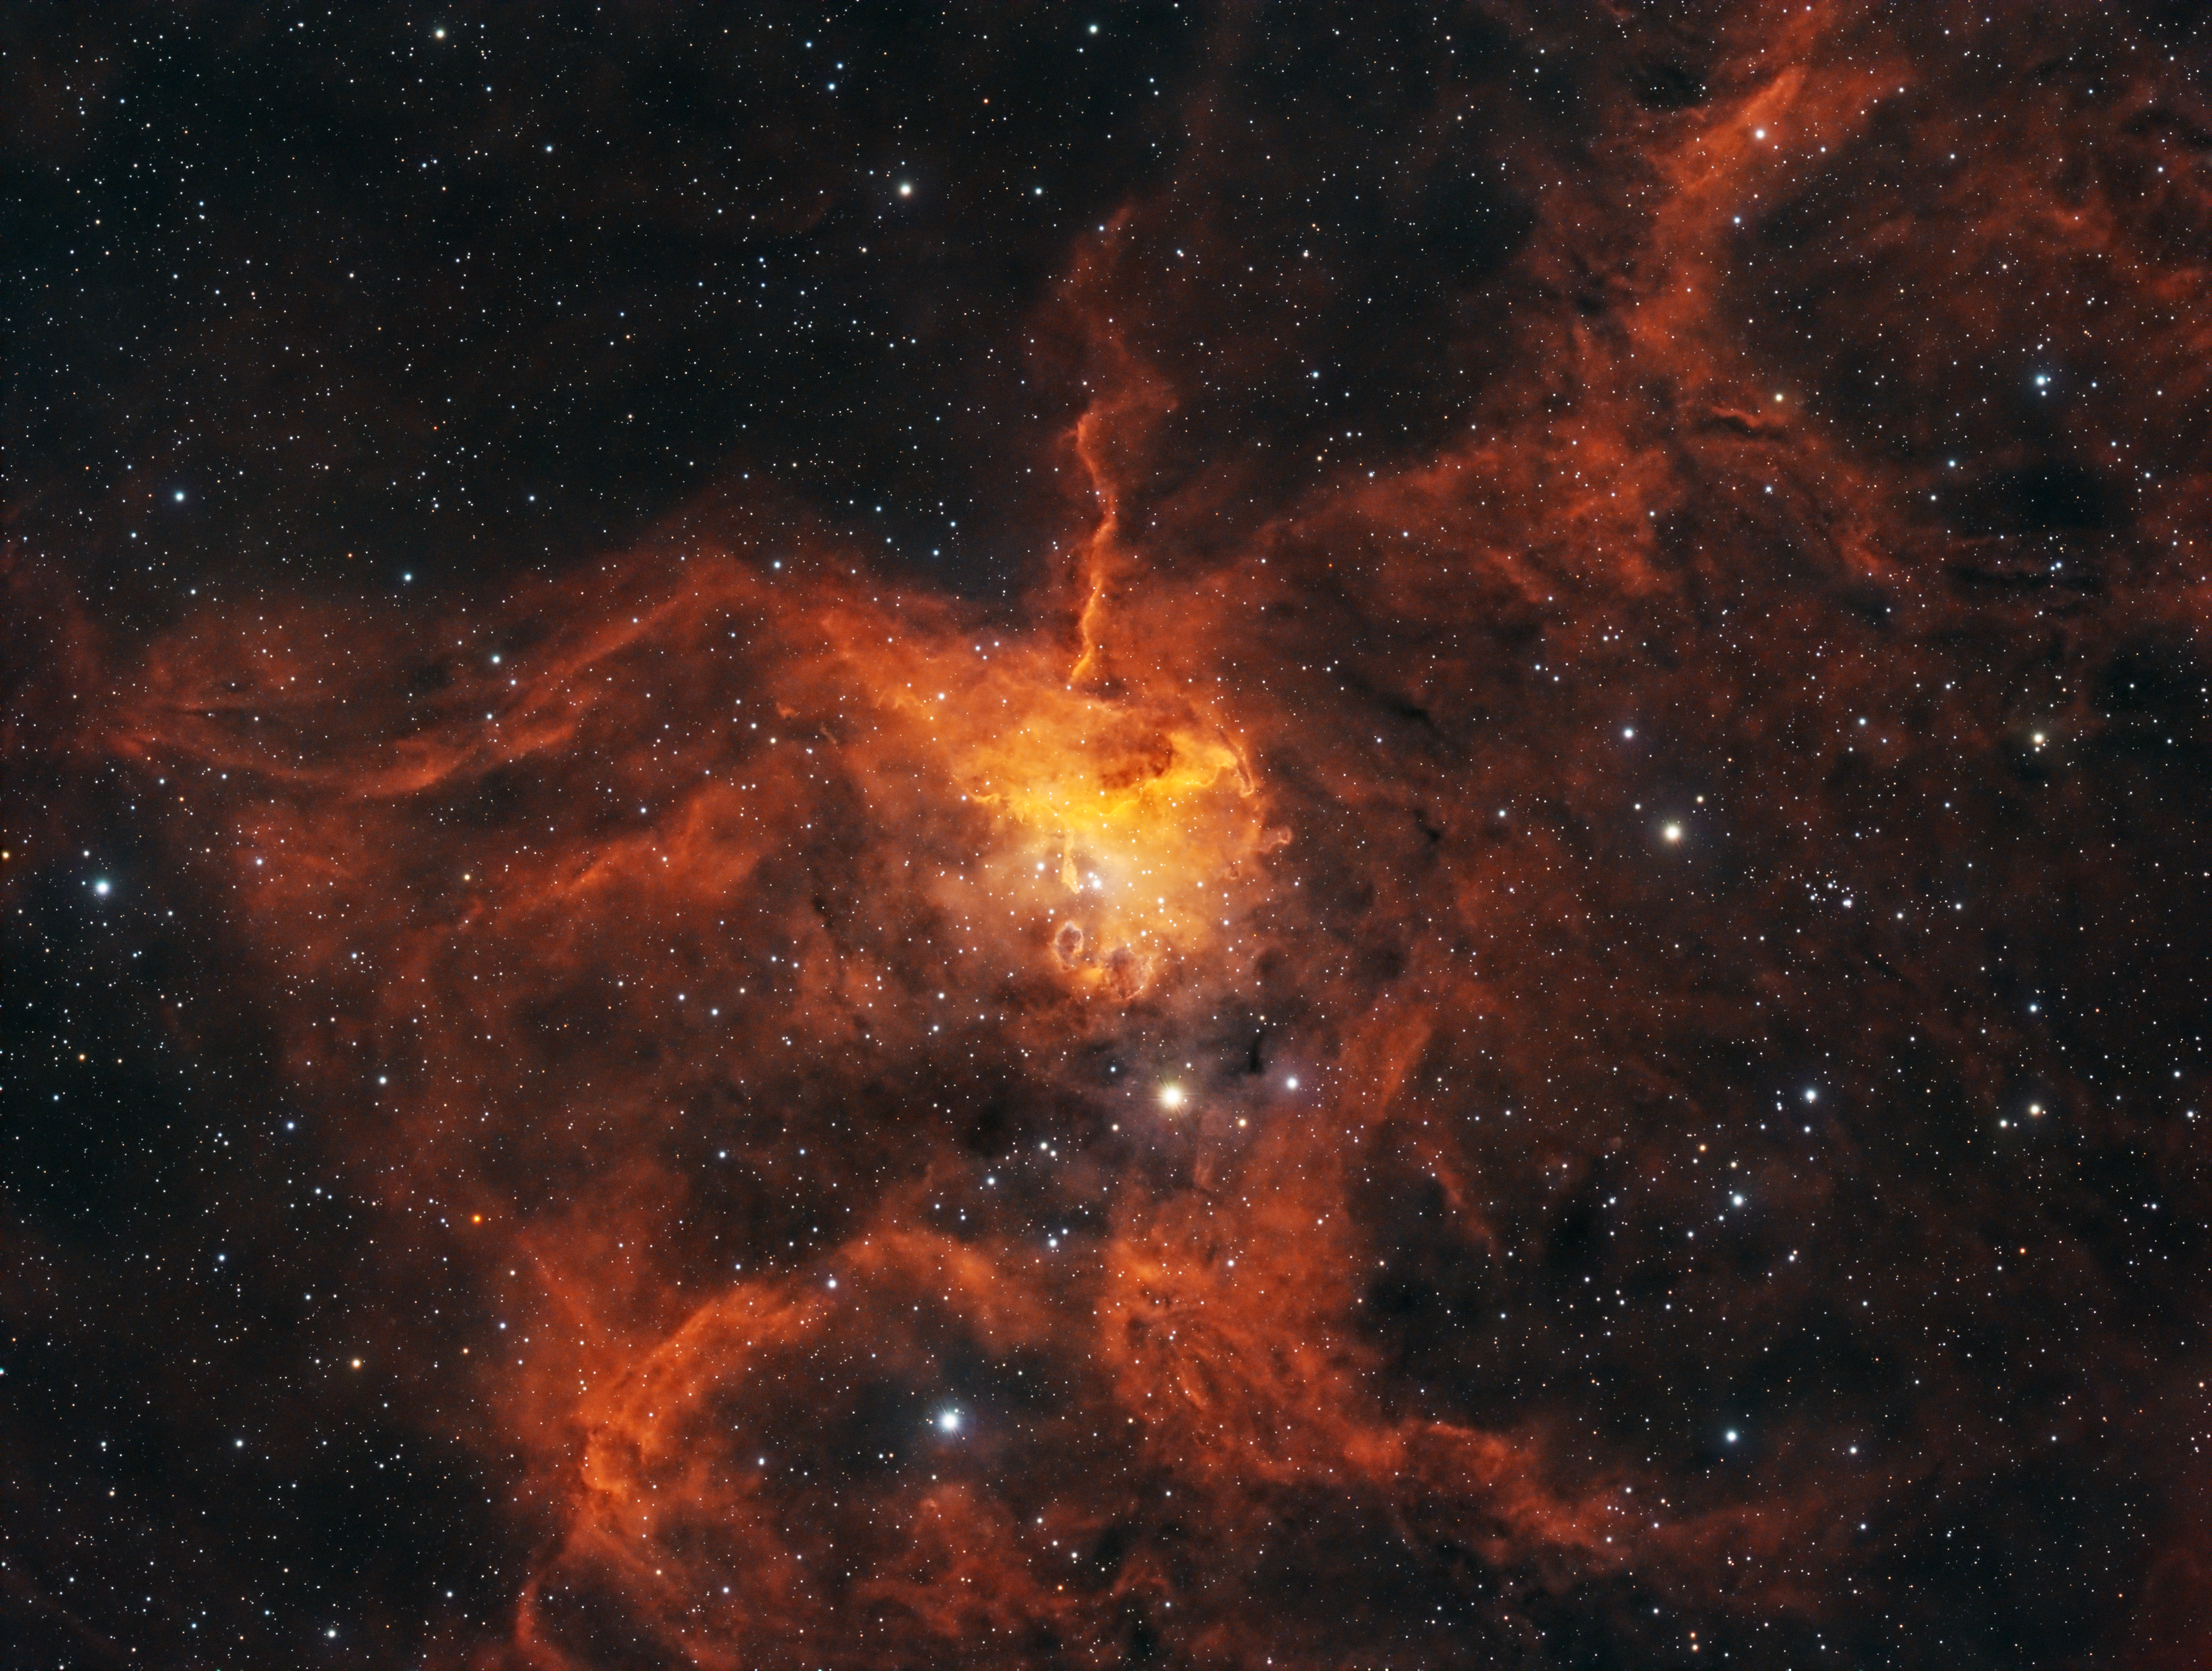 Spider Nebula